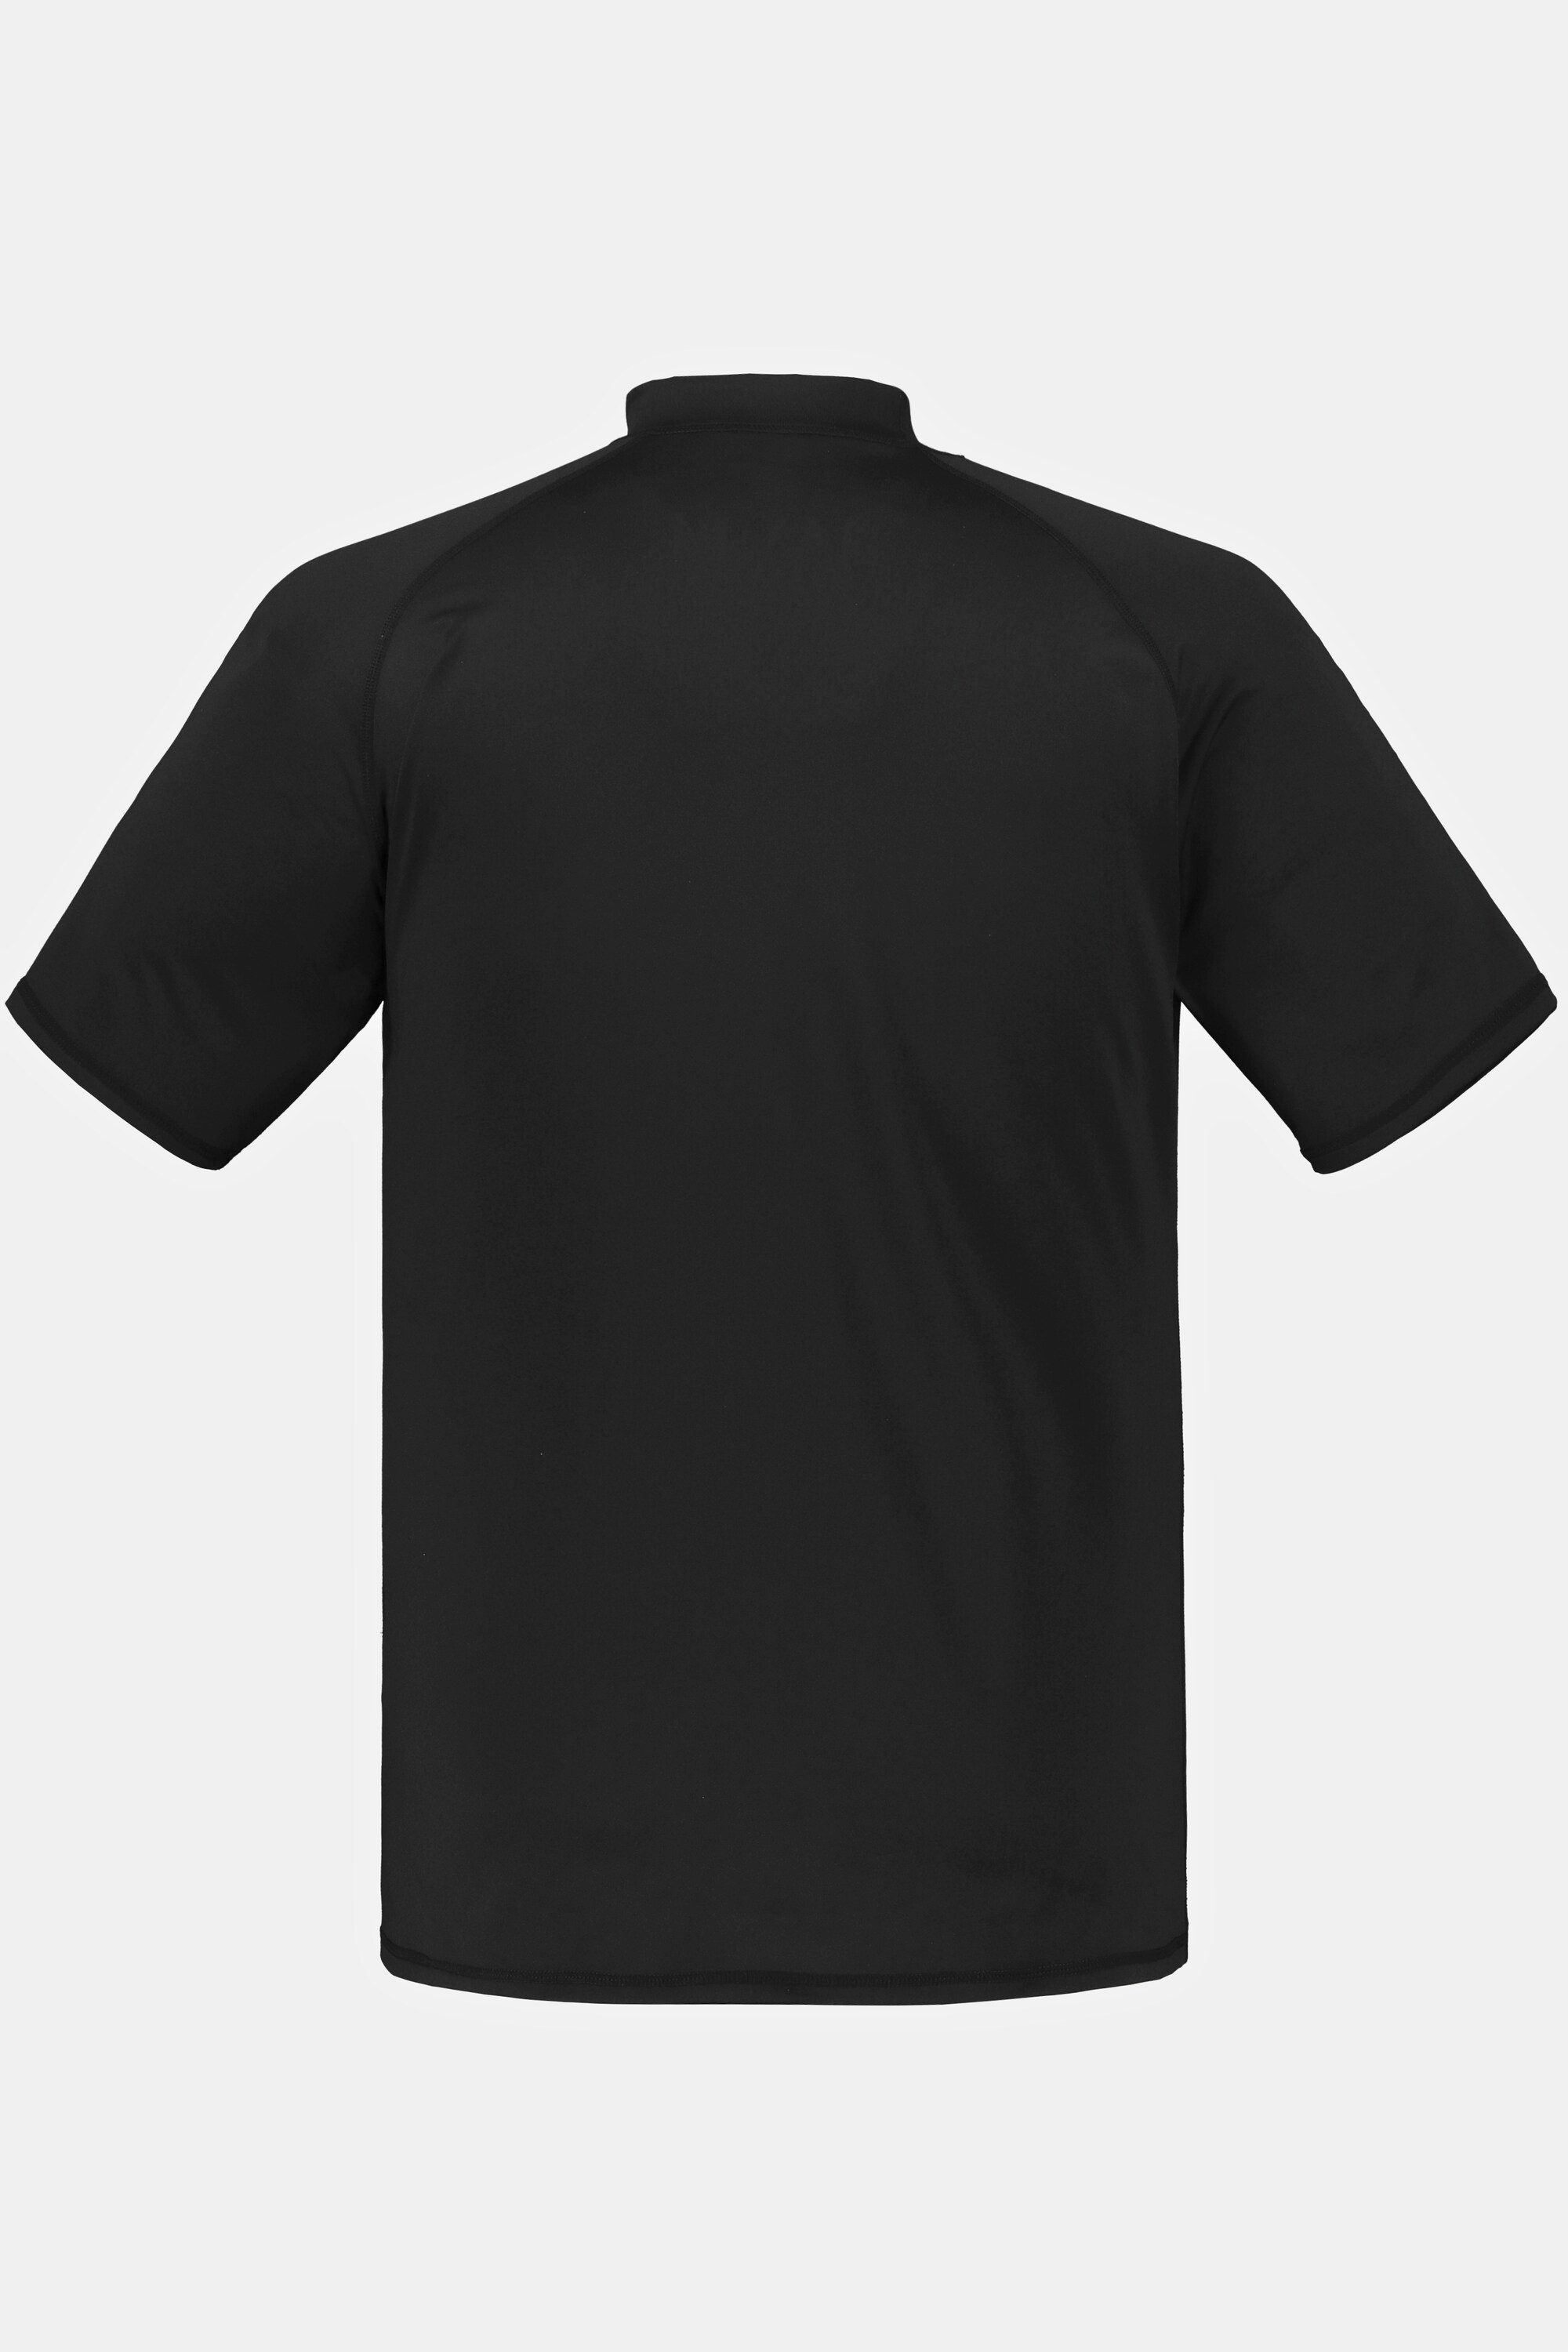 T-Shirt JP1880 schwarz Stehkragen Schwimmshirt UV-Schutz Halbarm